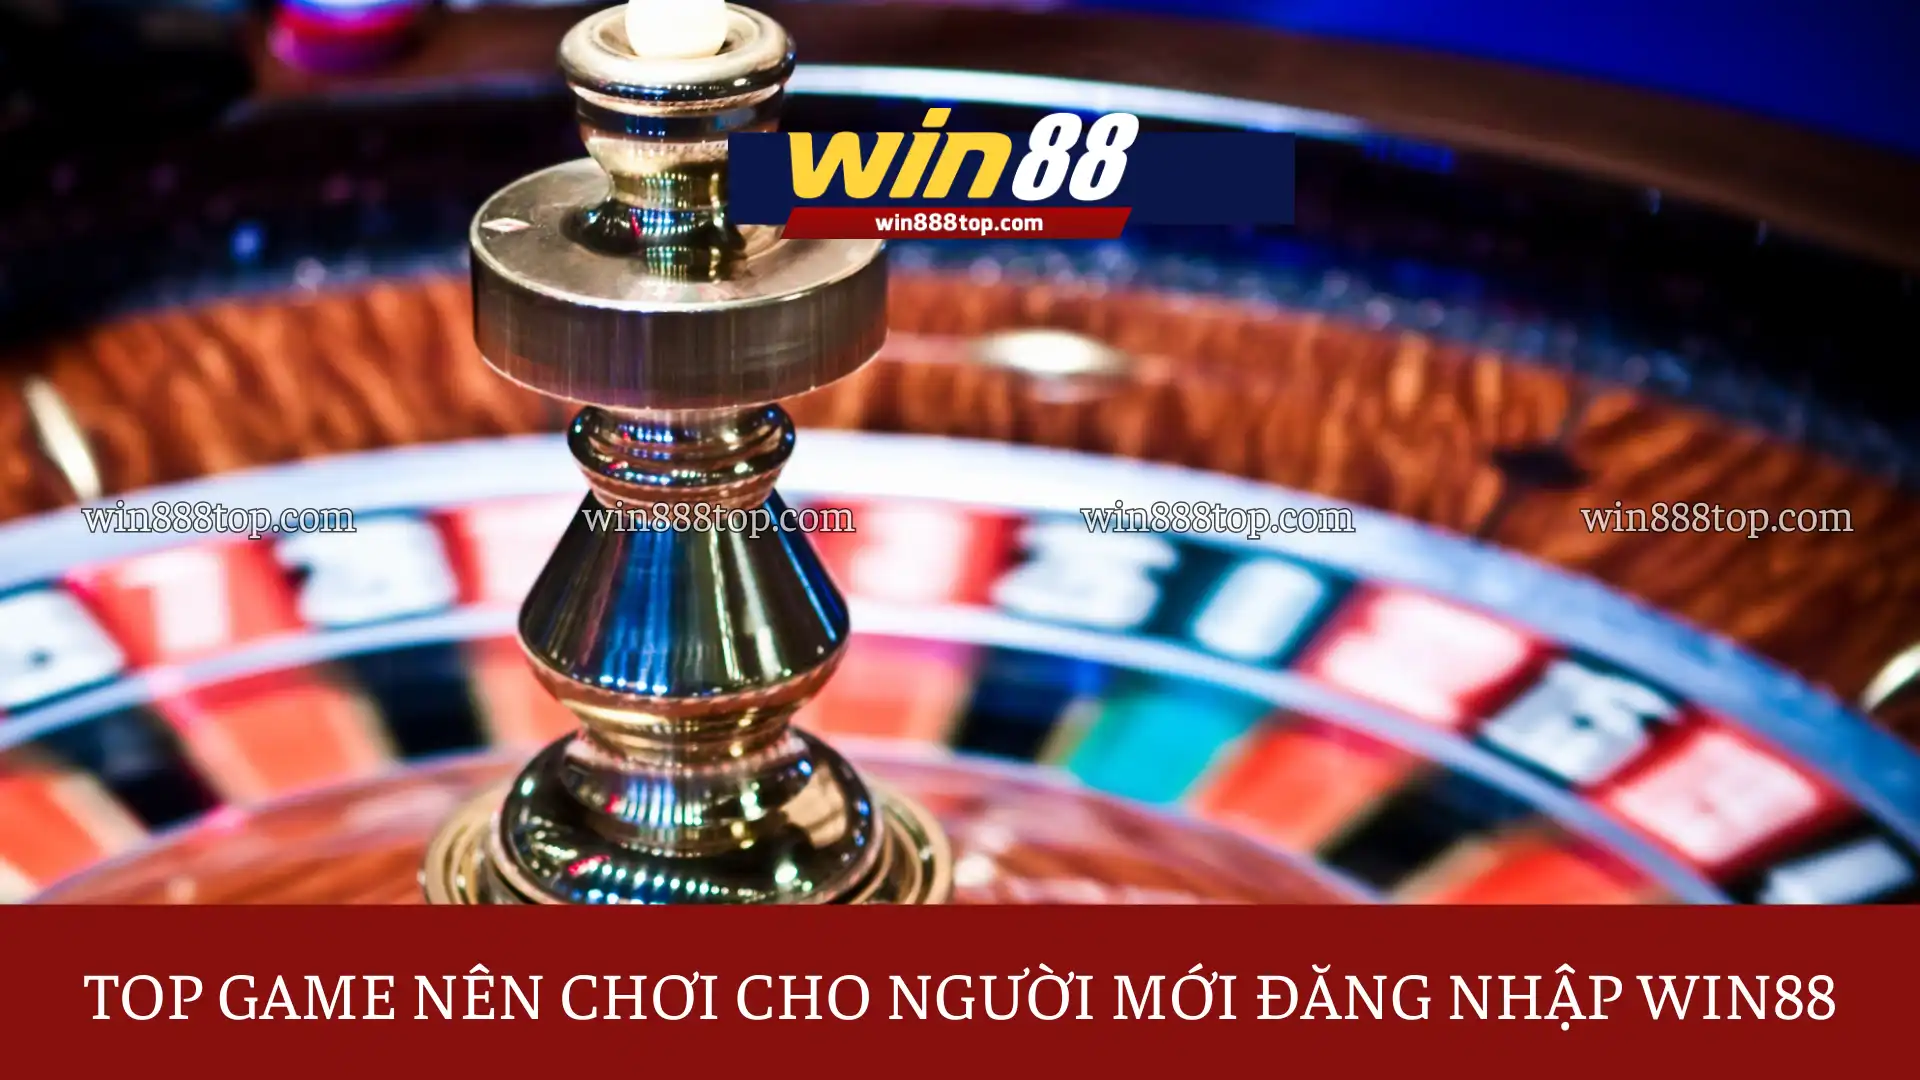 top-game-nen-thu-cho-nguoi-moi-dang-nhap-win88